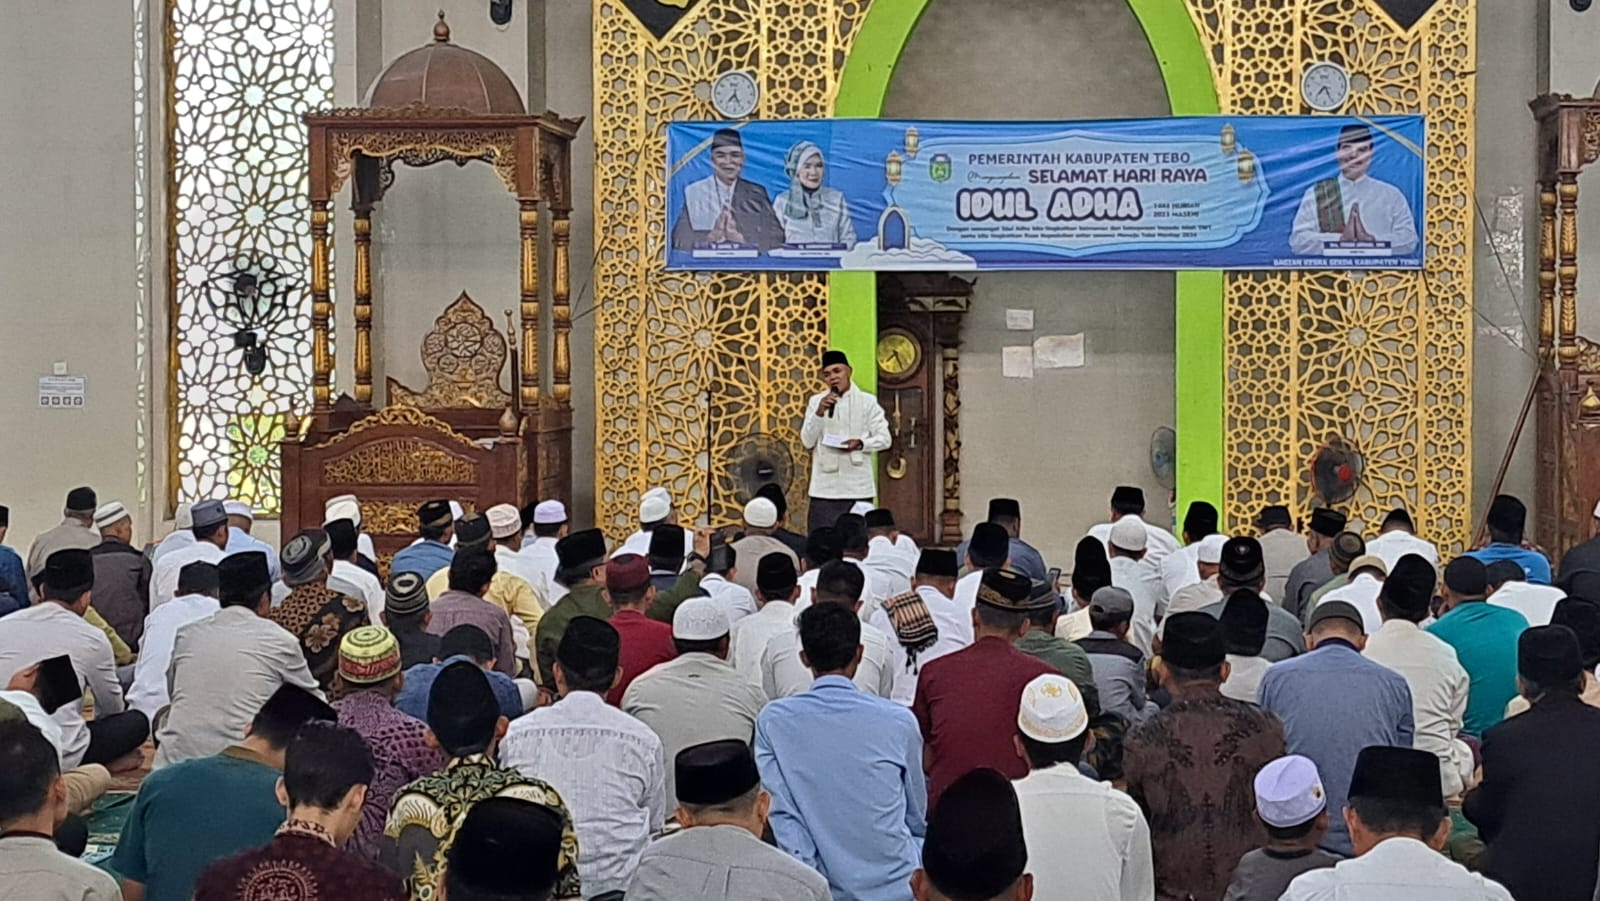 Pj Bupati Tebo Aspan Salat Idul Adha di Masjid Agung Al Ittihad: Pembagian Hewan Qurban untuk Kebersamaan